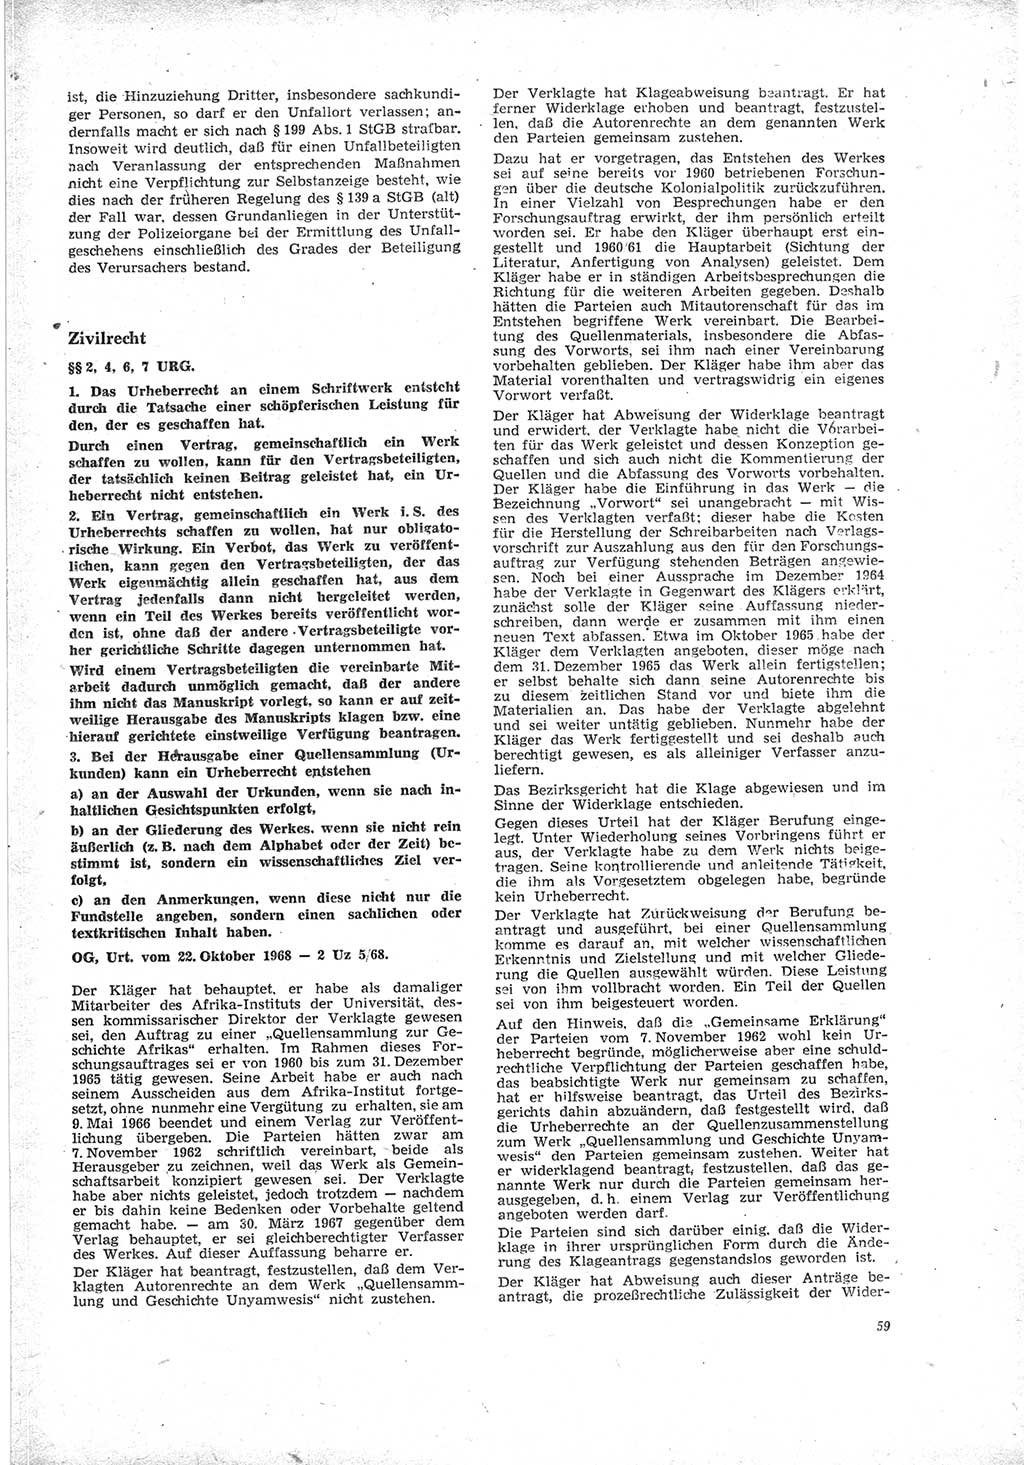 Neue Justiz (NJ), Zeitschrift für Recht und Rechtswissenschaft [Deutsche Demokratische Republik (DDR)], 23. Jahrgang 1969, Seite 59 (NJ DDR 1969, S. 59)